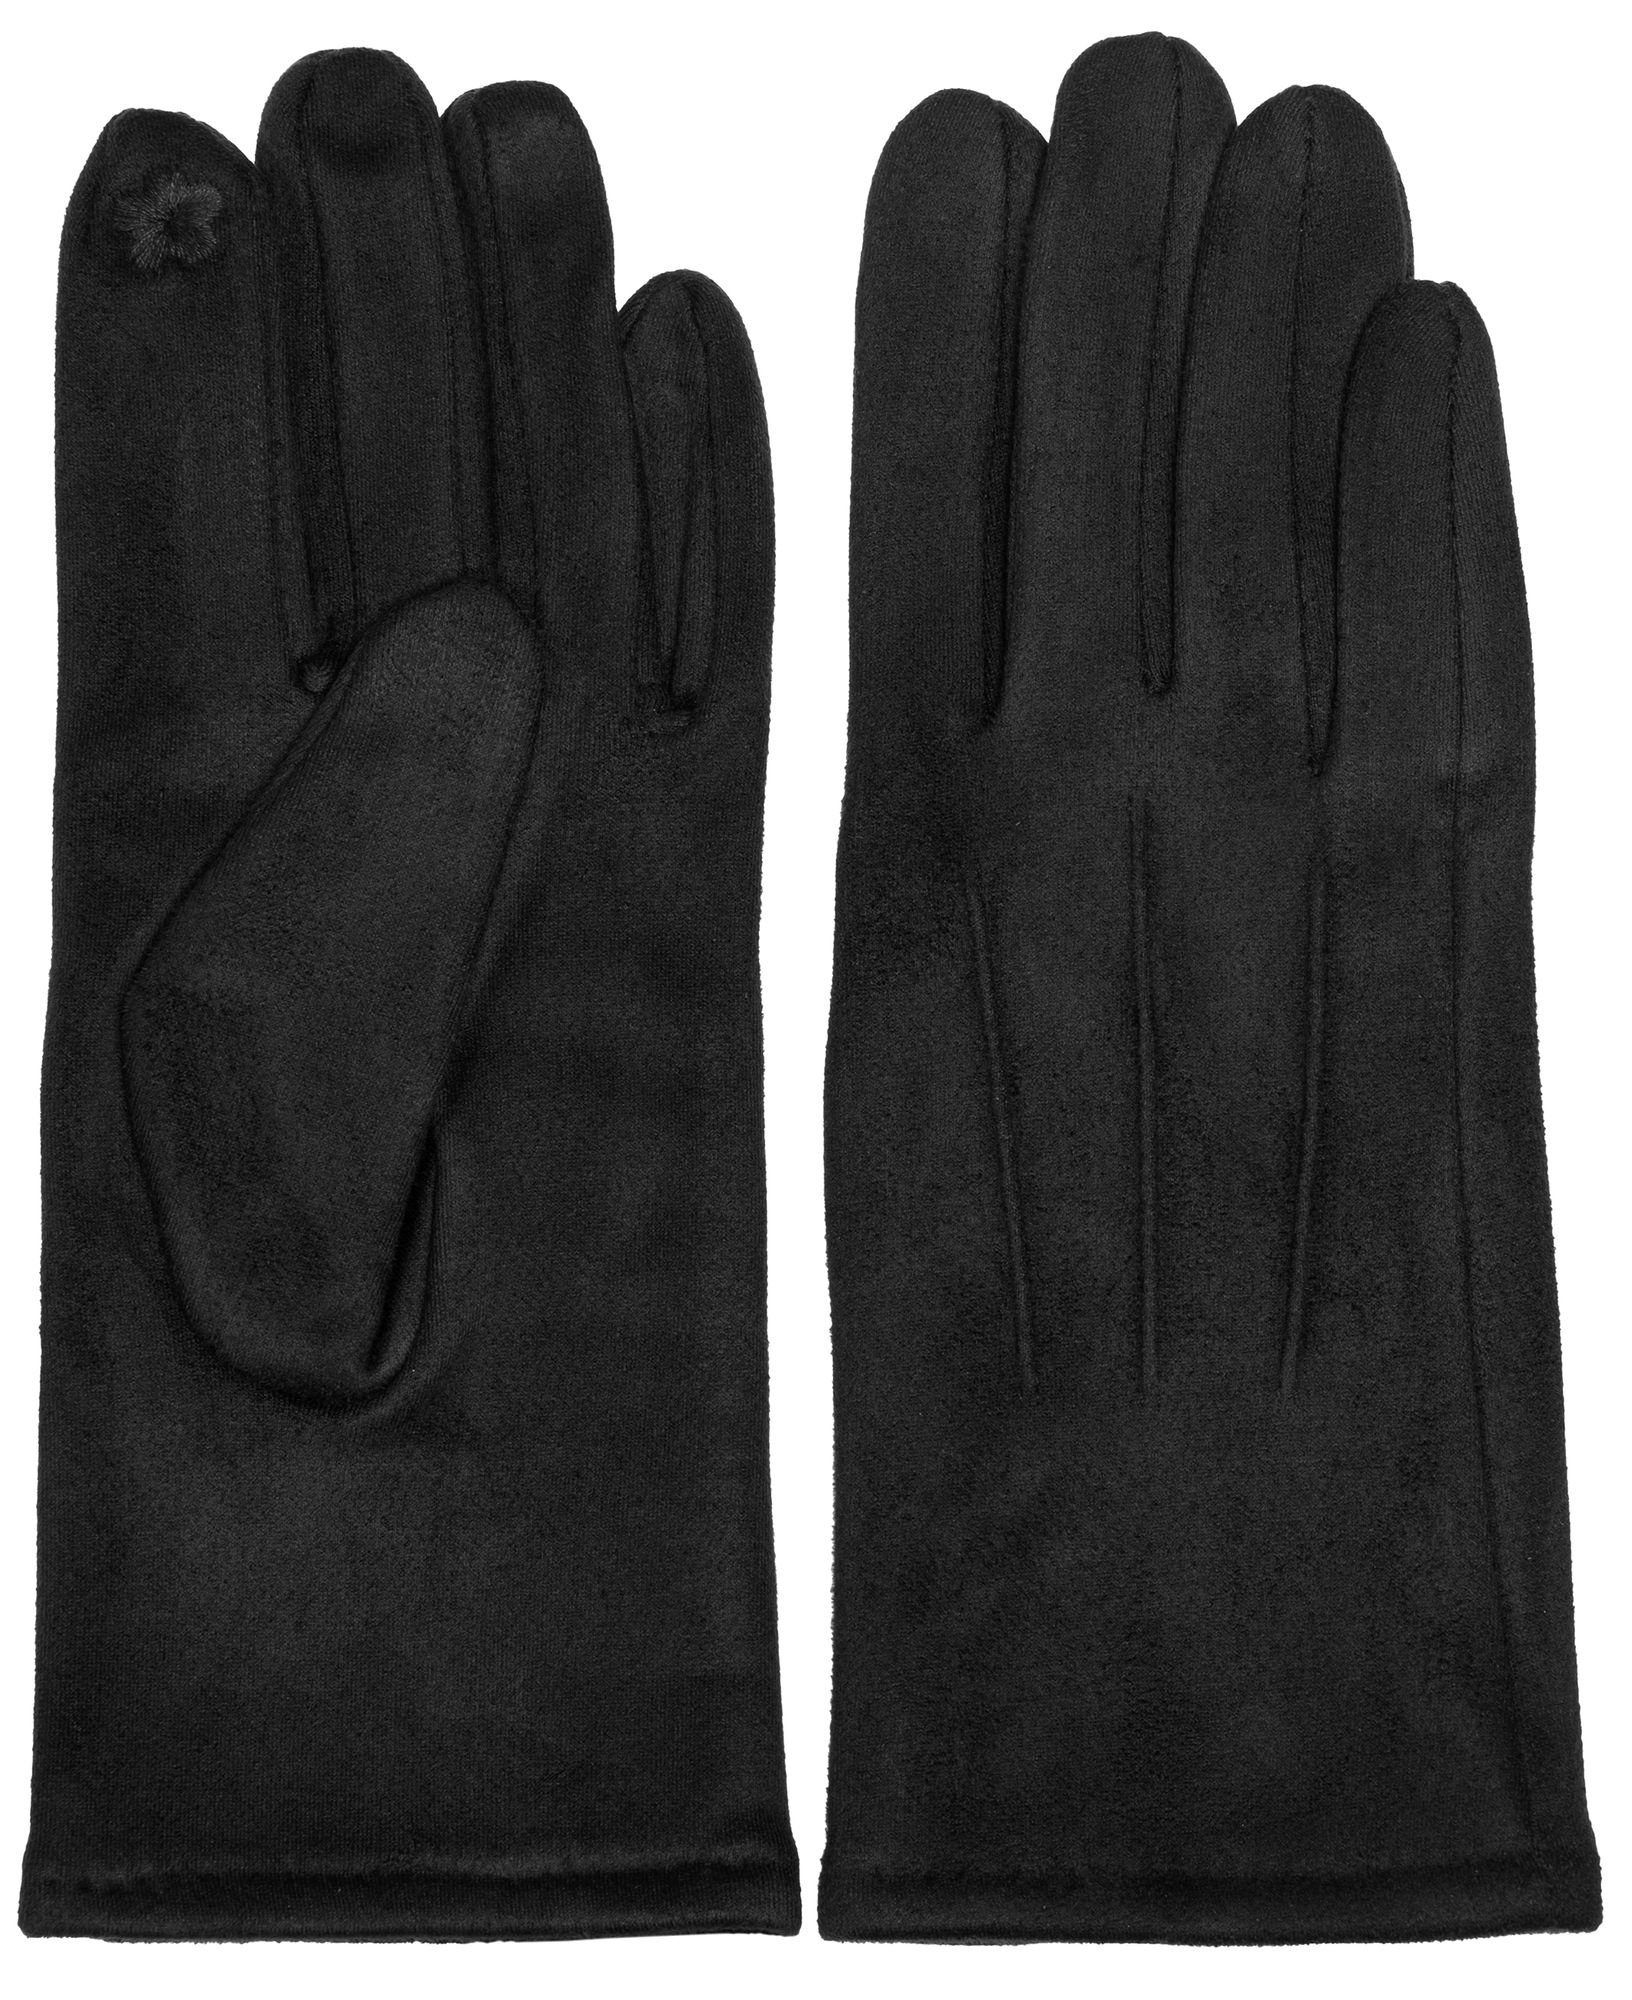 Caspar Strickhandschuhe GLV014 klassisch elegante uni Damen Handschuhe mit 3 Nähten schwarz